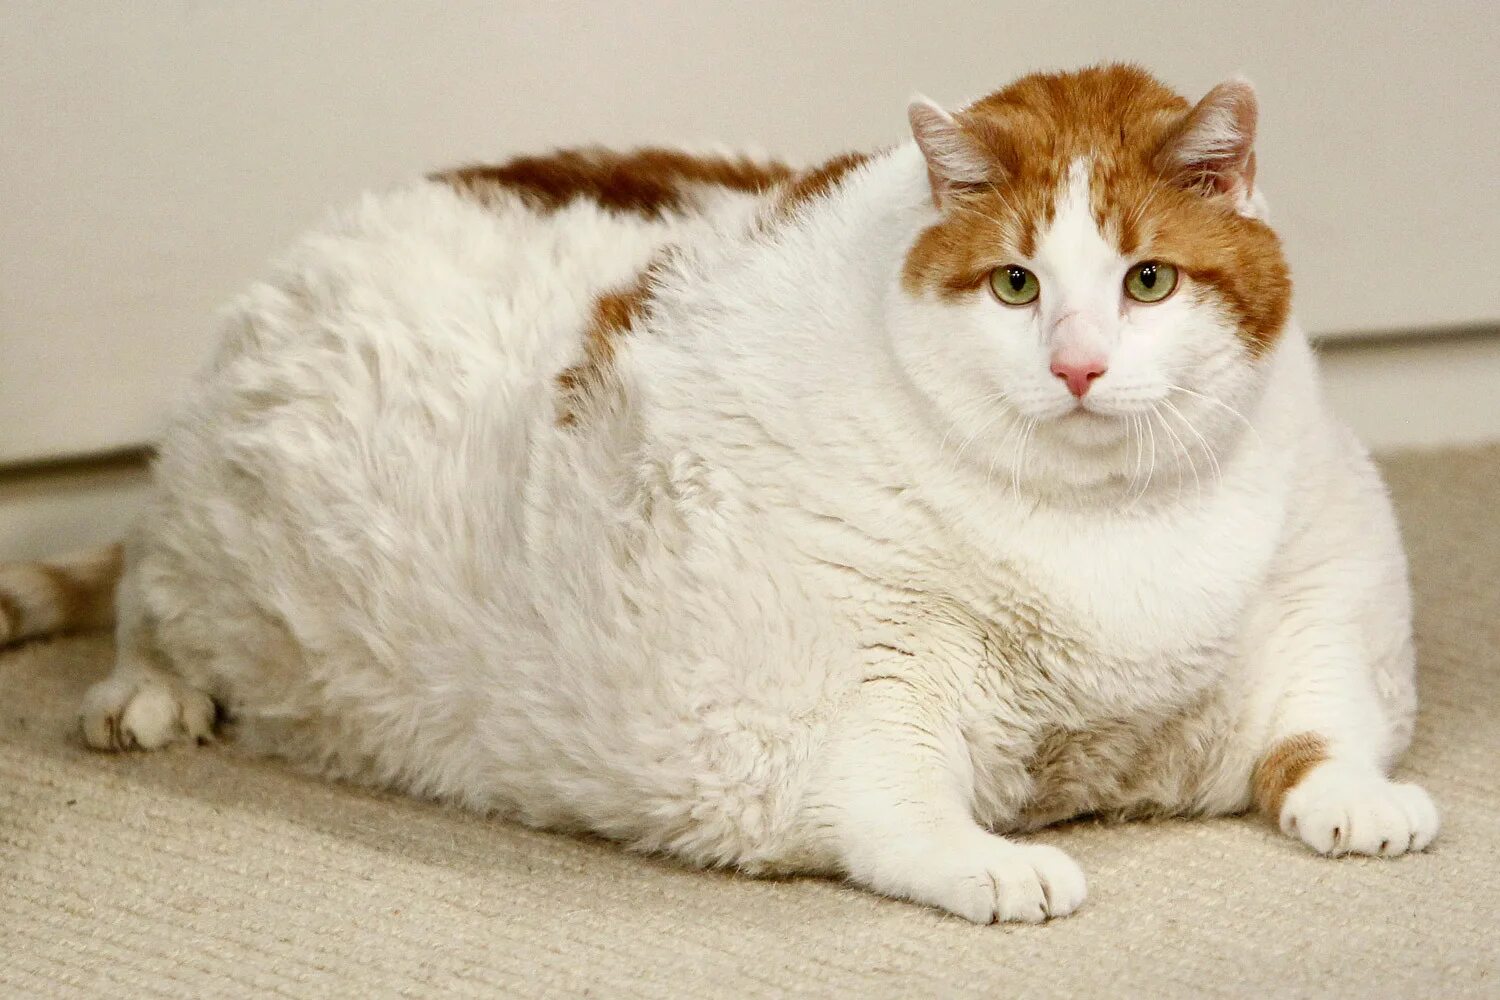 Упитанный это. Фат кат. Толстый кот. Очень жирный кот.